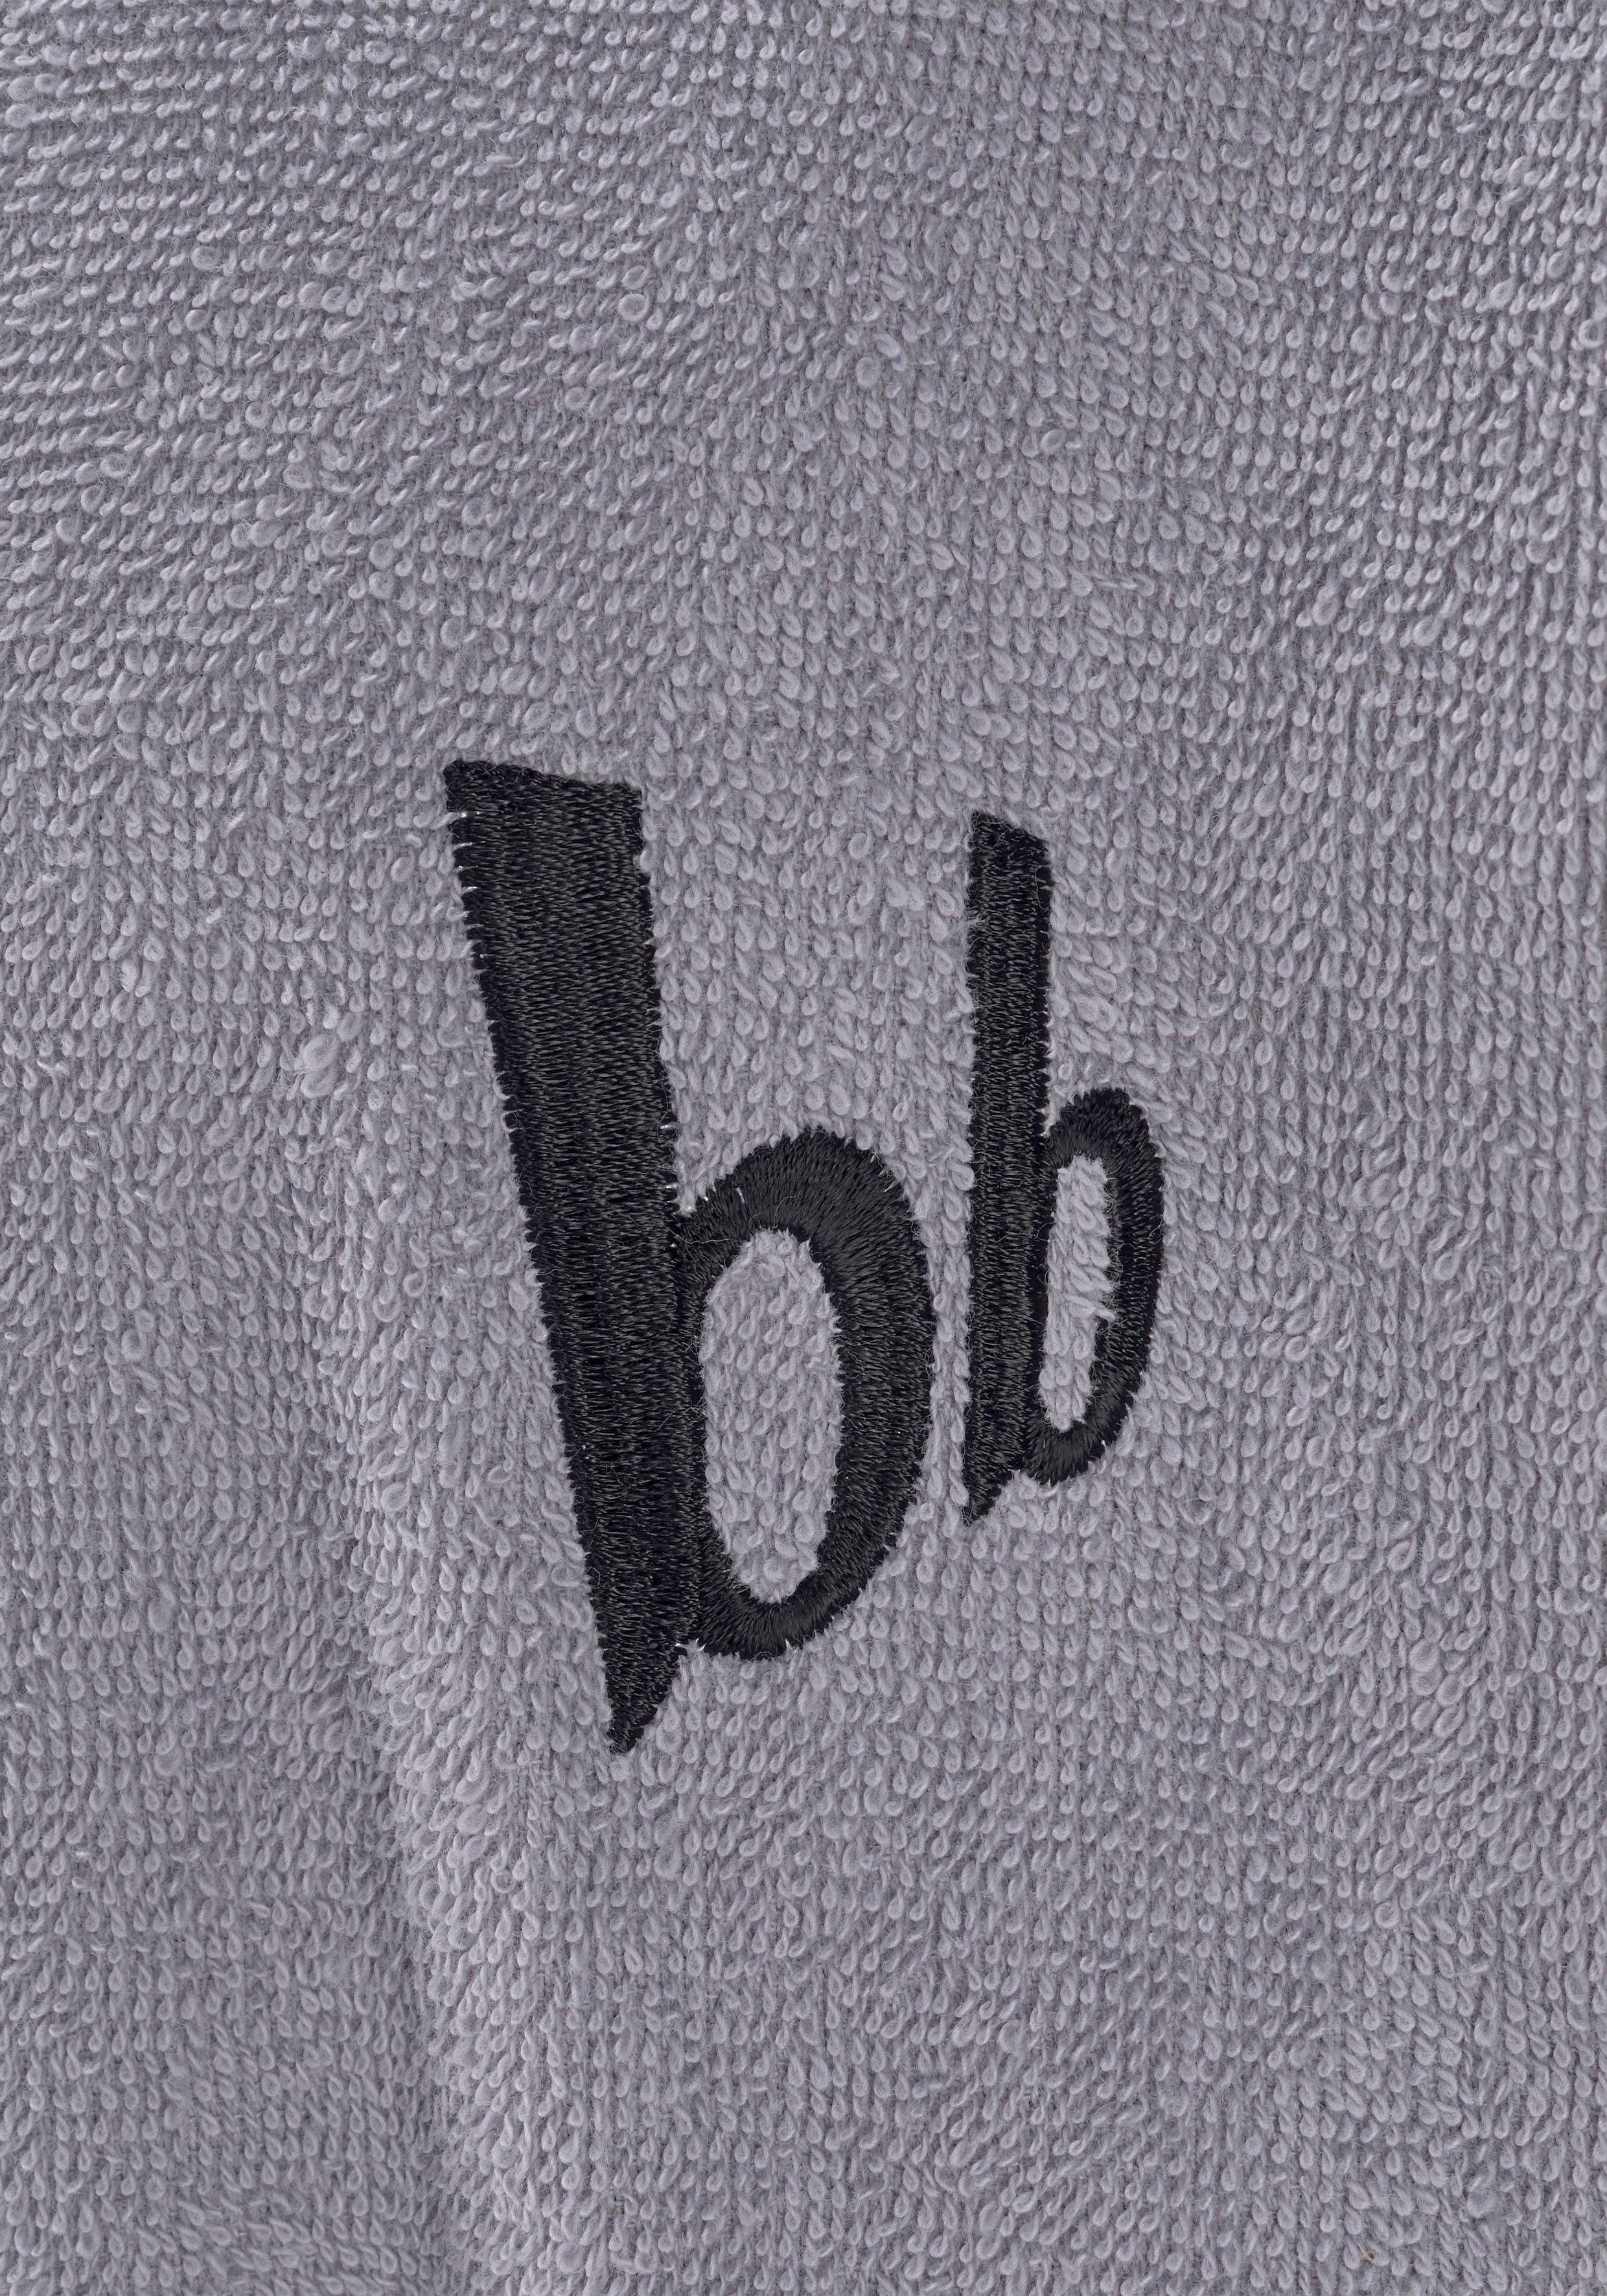 Bruno Banani Bademantel, S-4XL farblich Langform, grau Walkfrottee, Roy, Baumwolle, mit abgesetzten Streifen, Herrenbademantel Gürtel, Kimono-Kragen